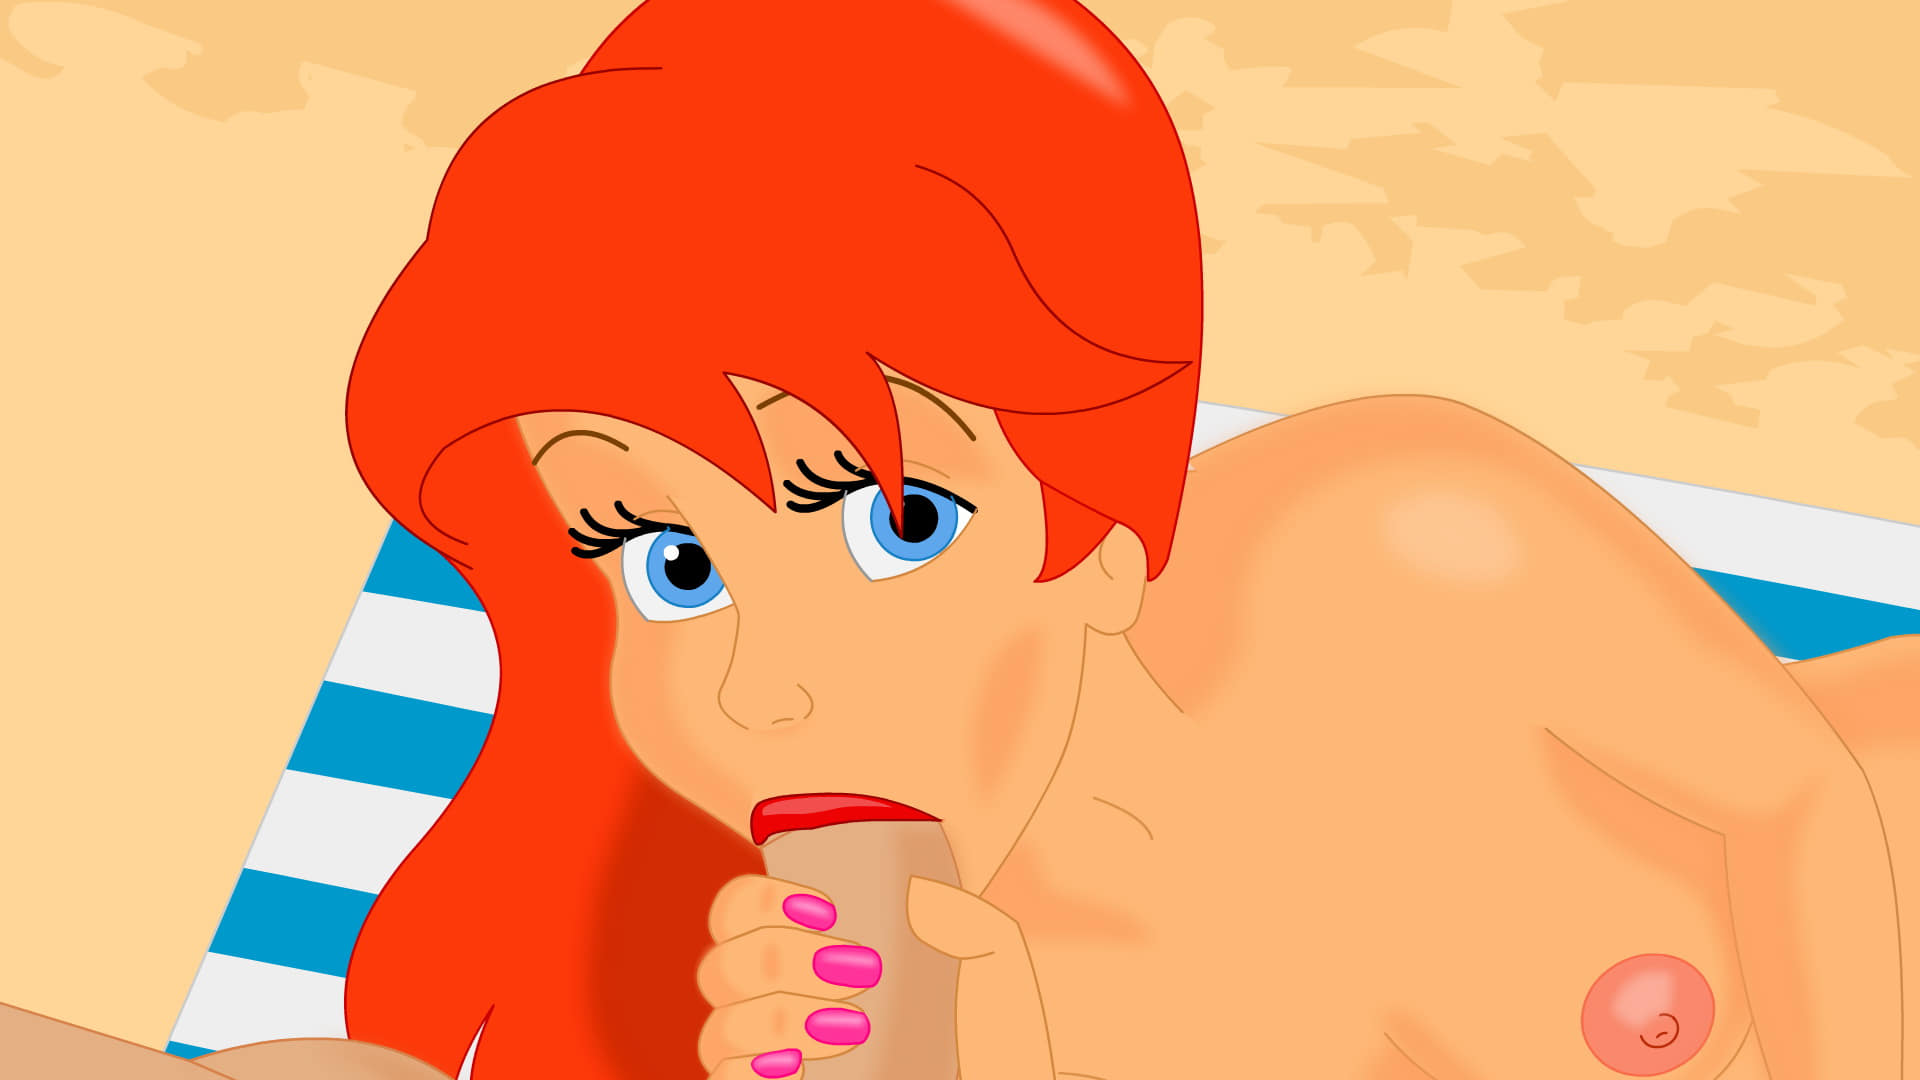 Ariel the mermaid